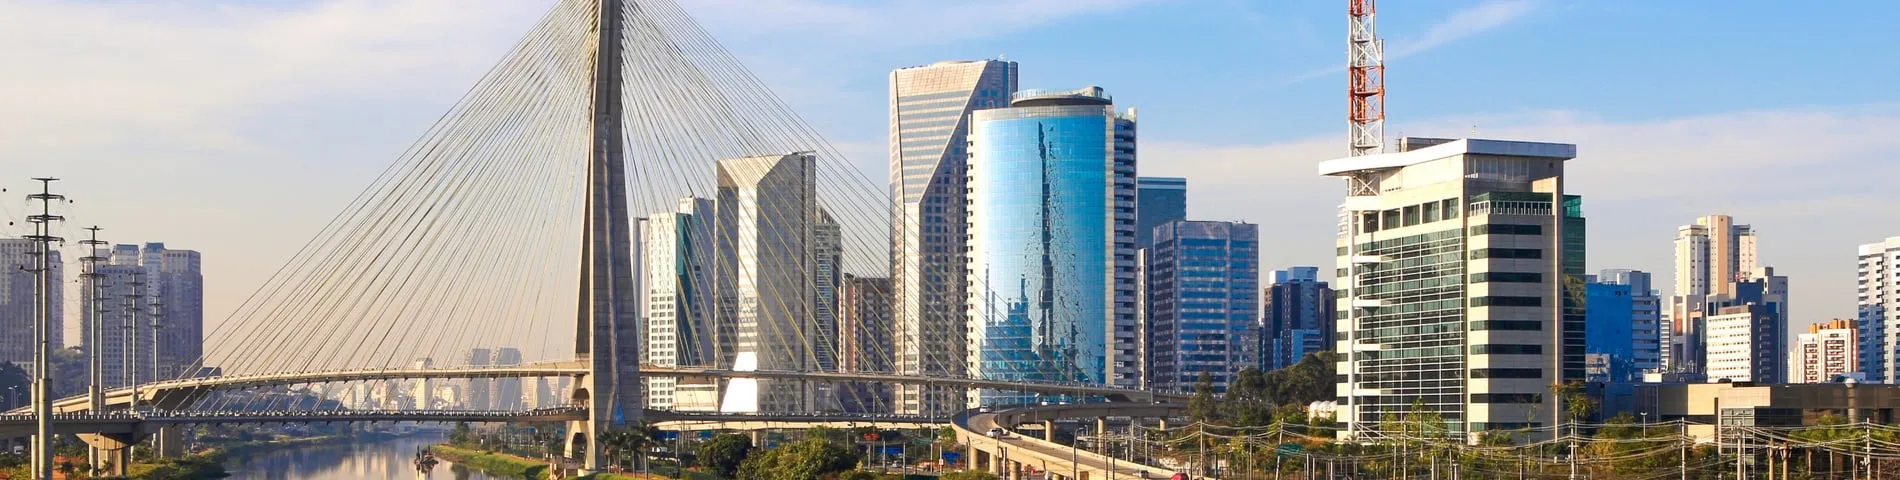 Sao Paulo - Curs estàndard